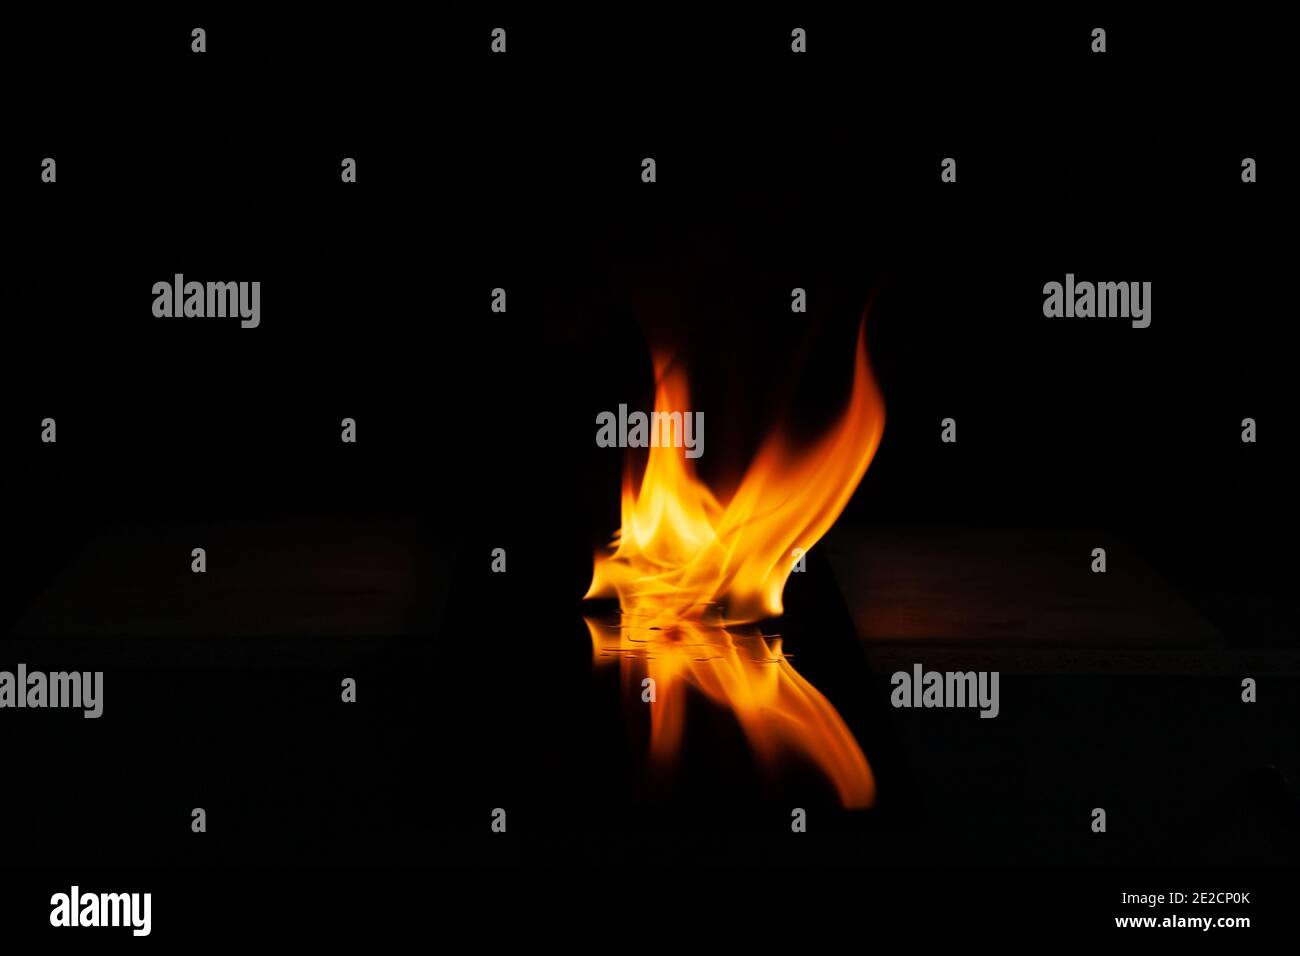 Feuerflamme mit Spiegelung im Glas auf einem schwarzen Hintergrund Stockfoto